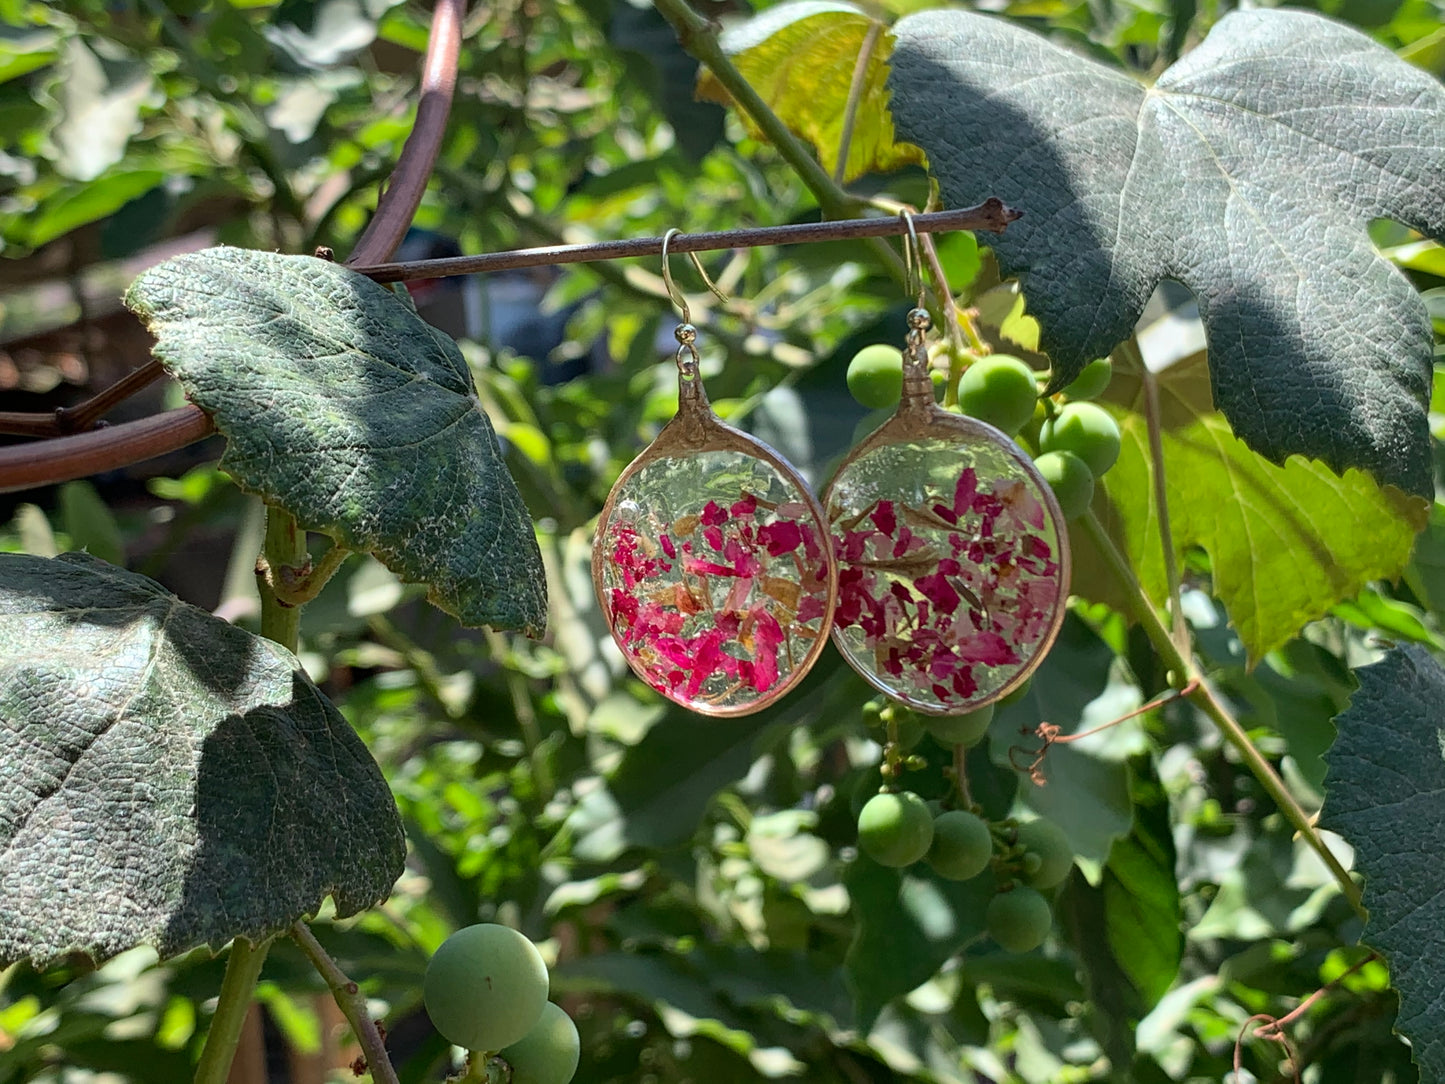 Rose Petal & Gold Leaf Earrings